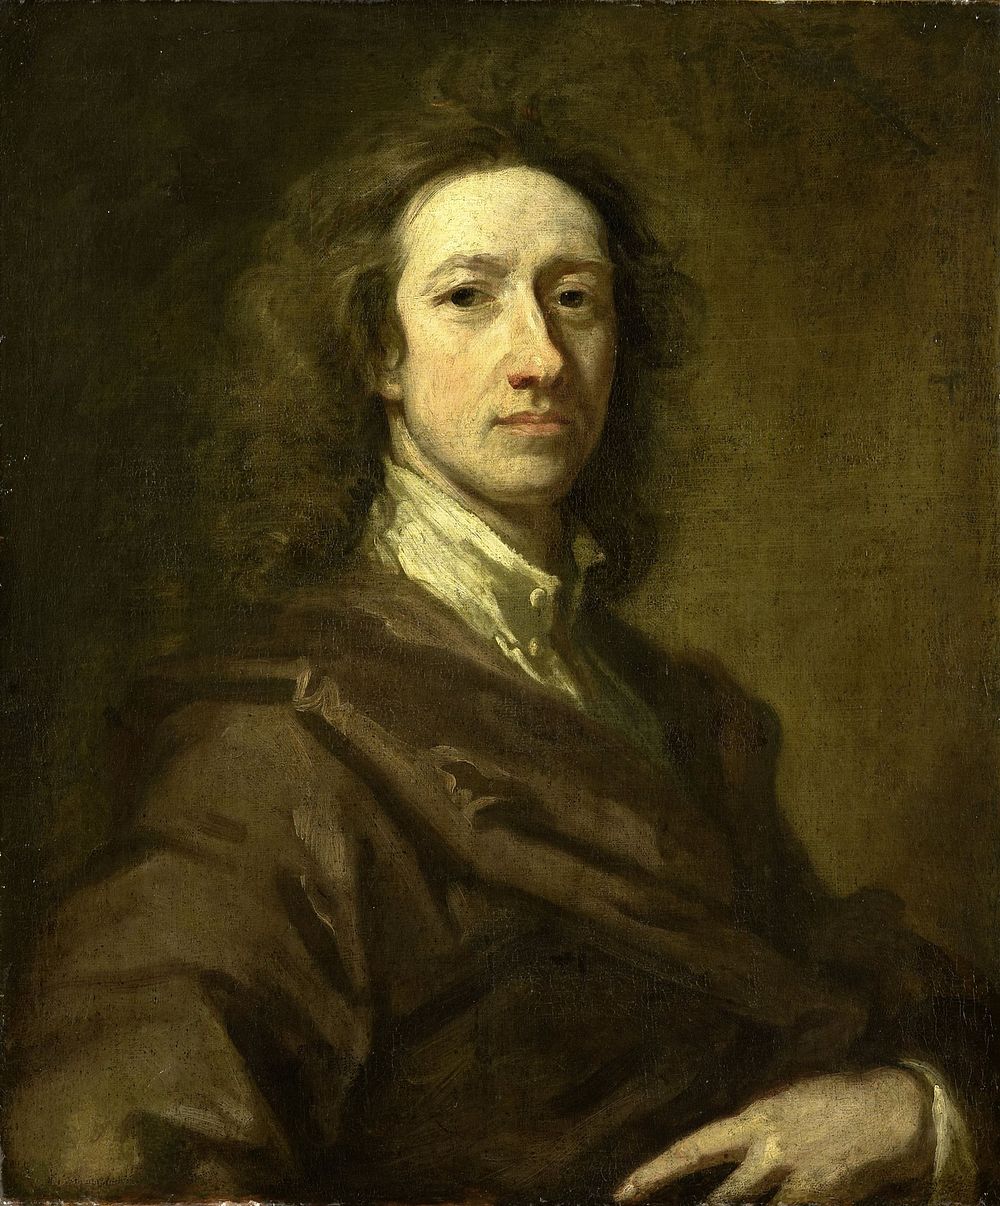 Cornelis de Bruyn (1652-1727), Draftsman and Traveller (1695 - 1700) by Gottfried Kneller